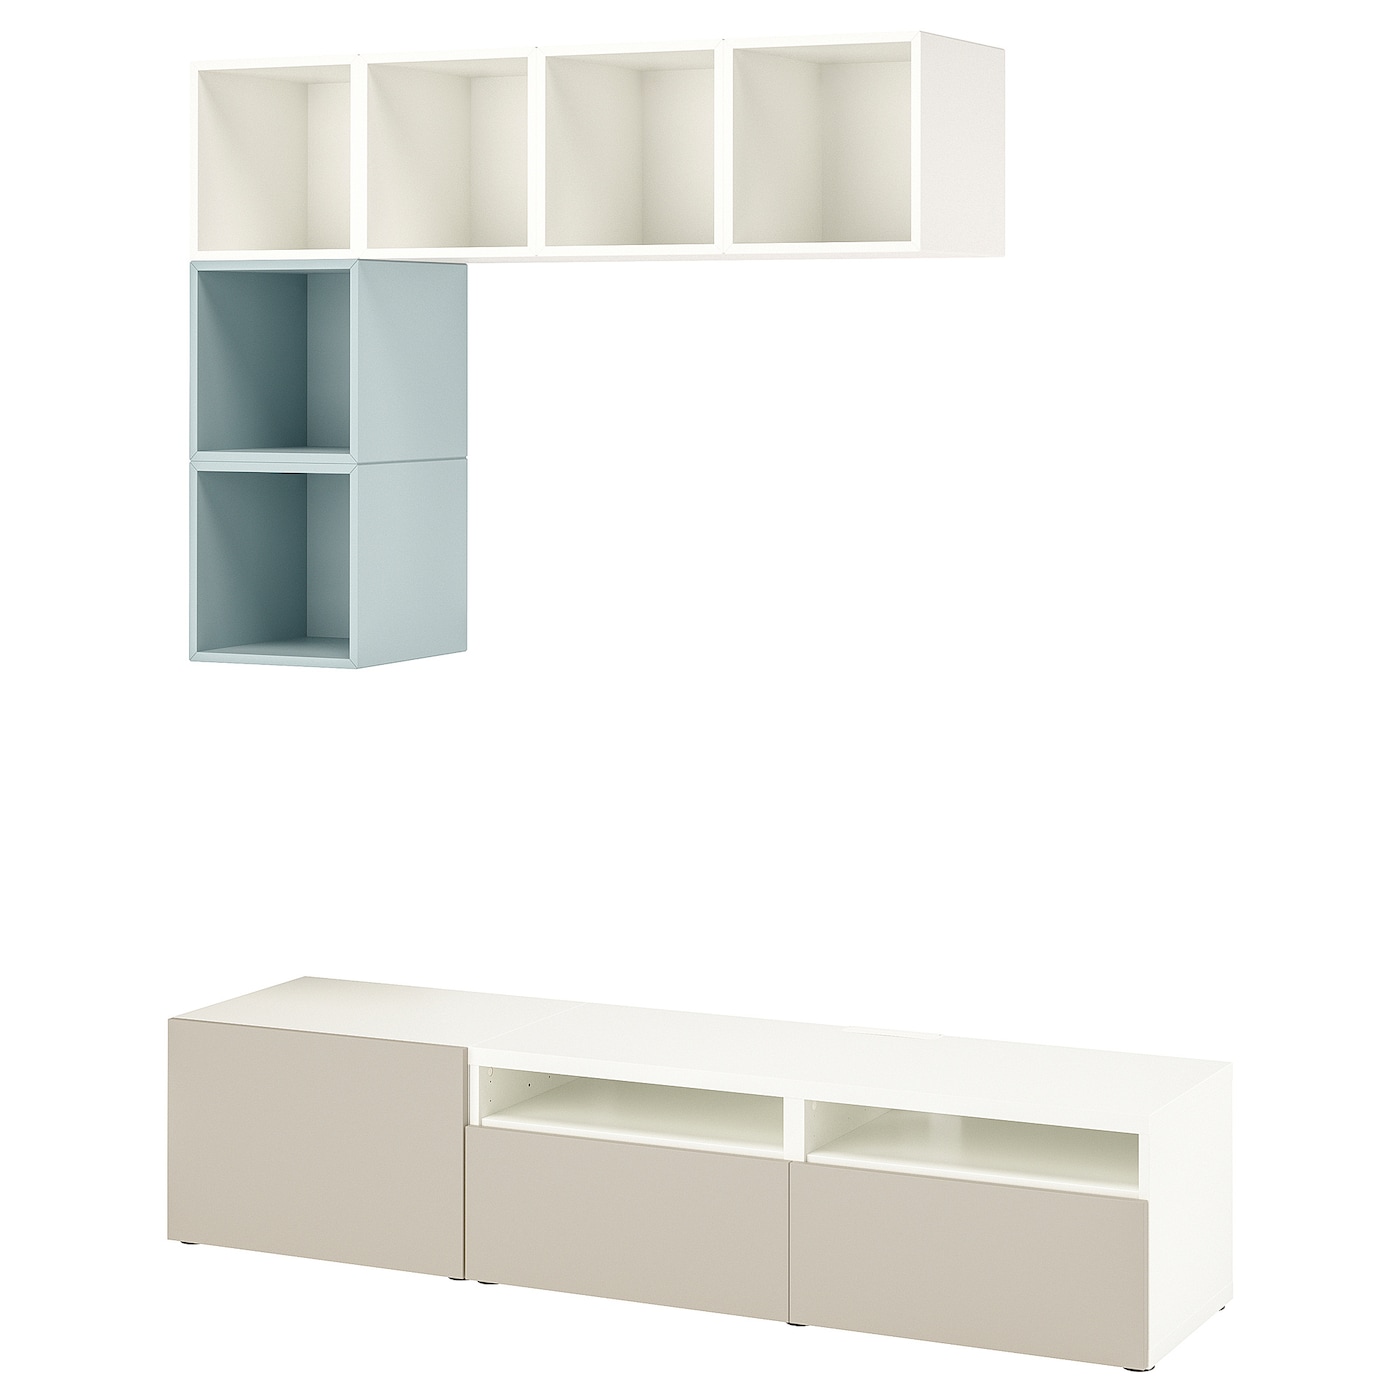 Комплект мебели д/гостиной  - IKEA BESTÅ/BESTA EKET, 180x42x170см, белый/светло-серый, БЕСТО ЭКЕТ ИКЕА